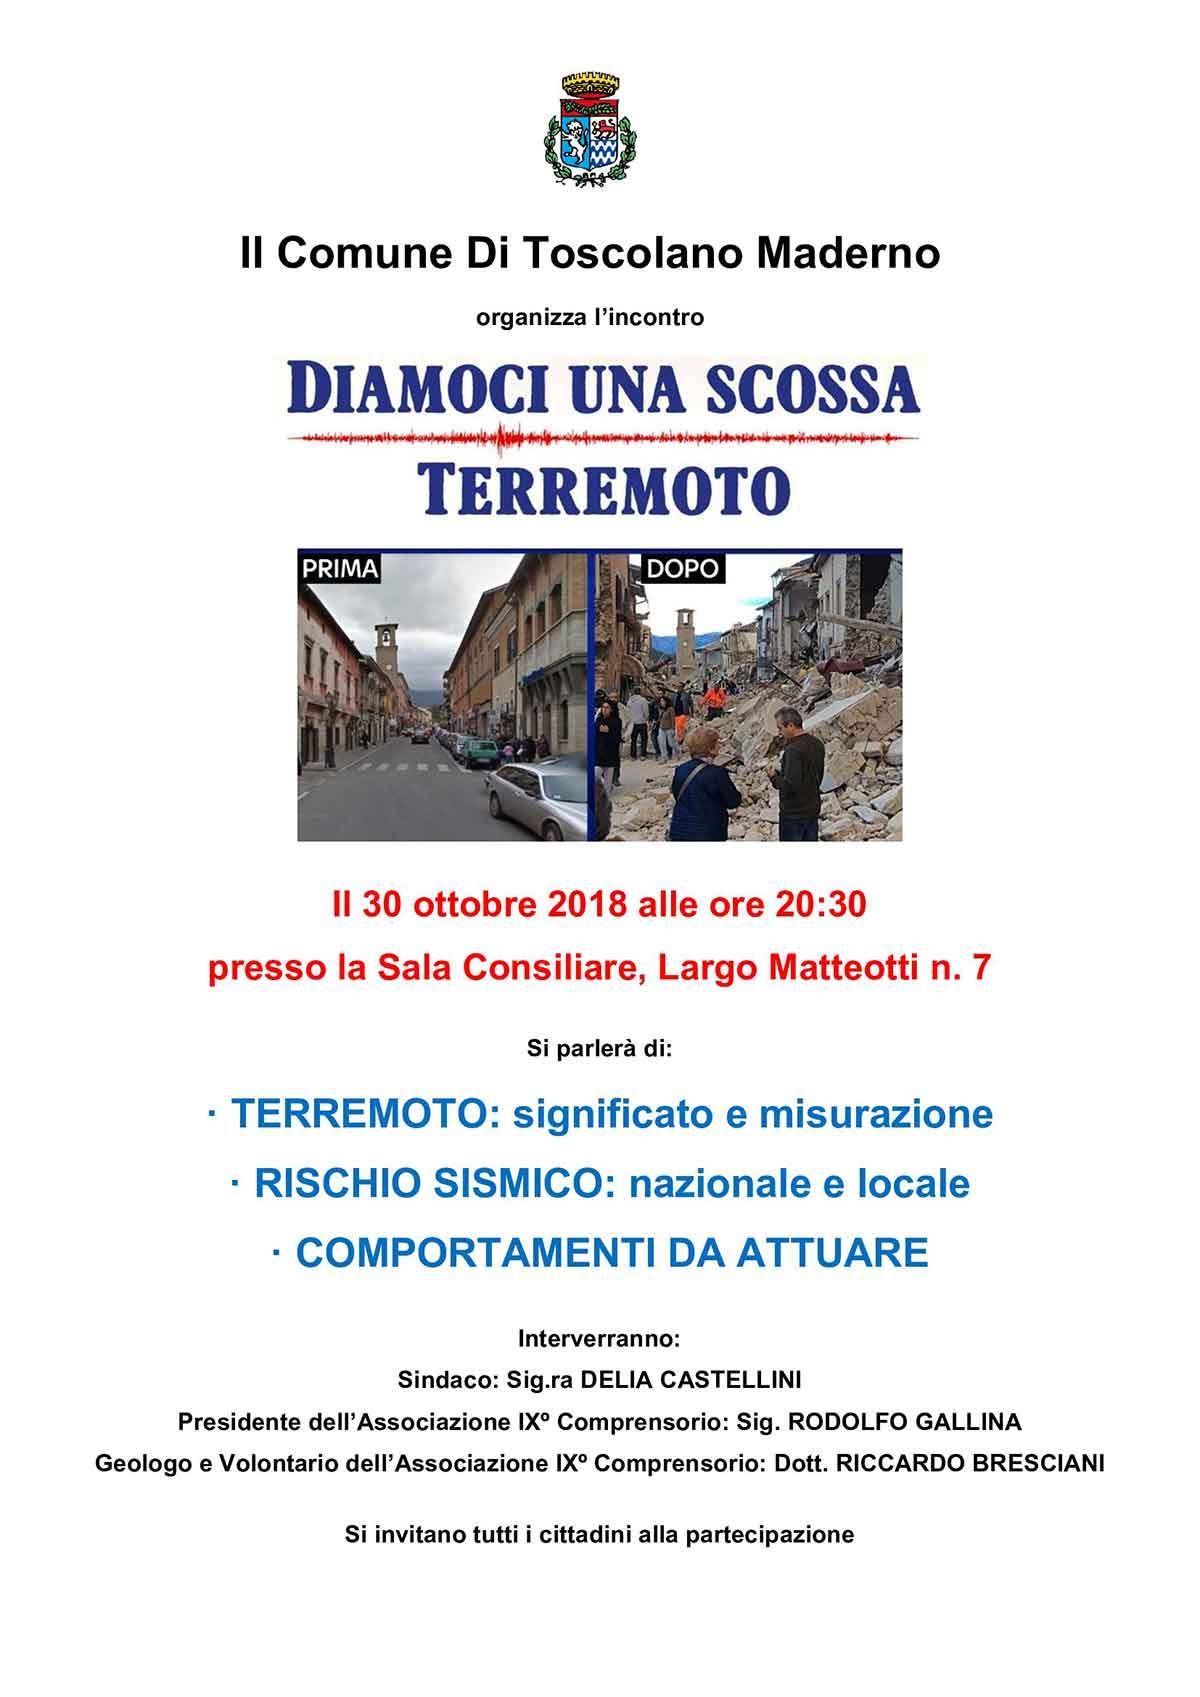 Locandina_rischio_sismico_Toscolano_Maderno-diamoci-una-scossa